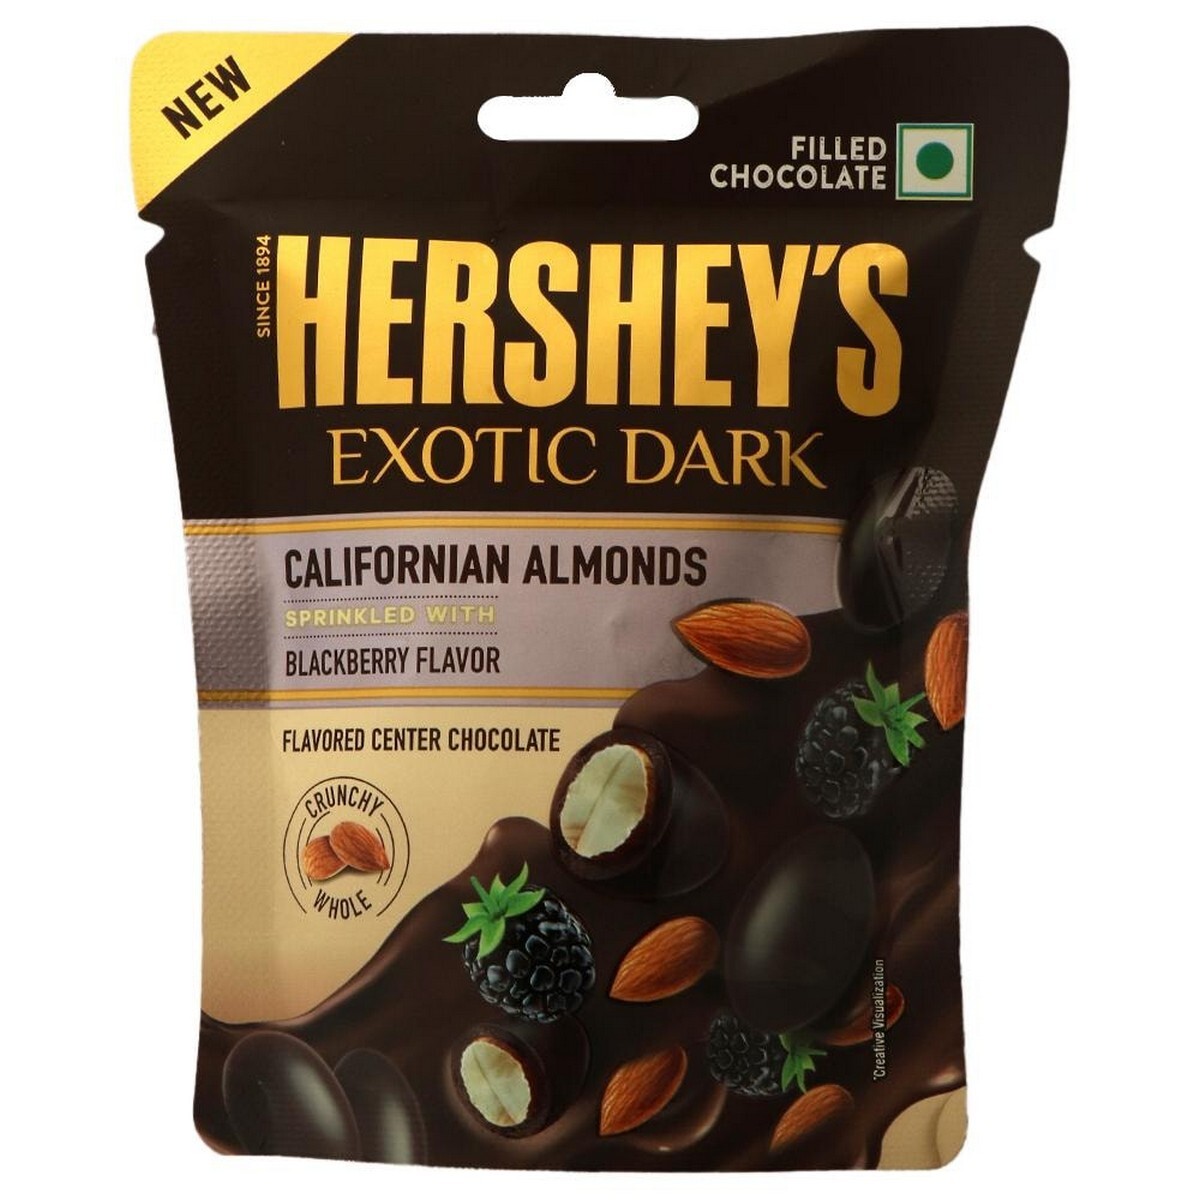 Hershey's Exotic Dark Californian Almonds Blackberry Flavor 30g